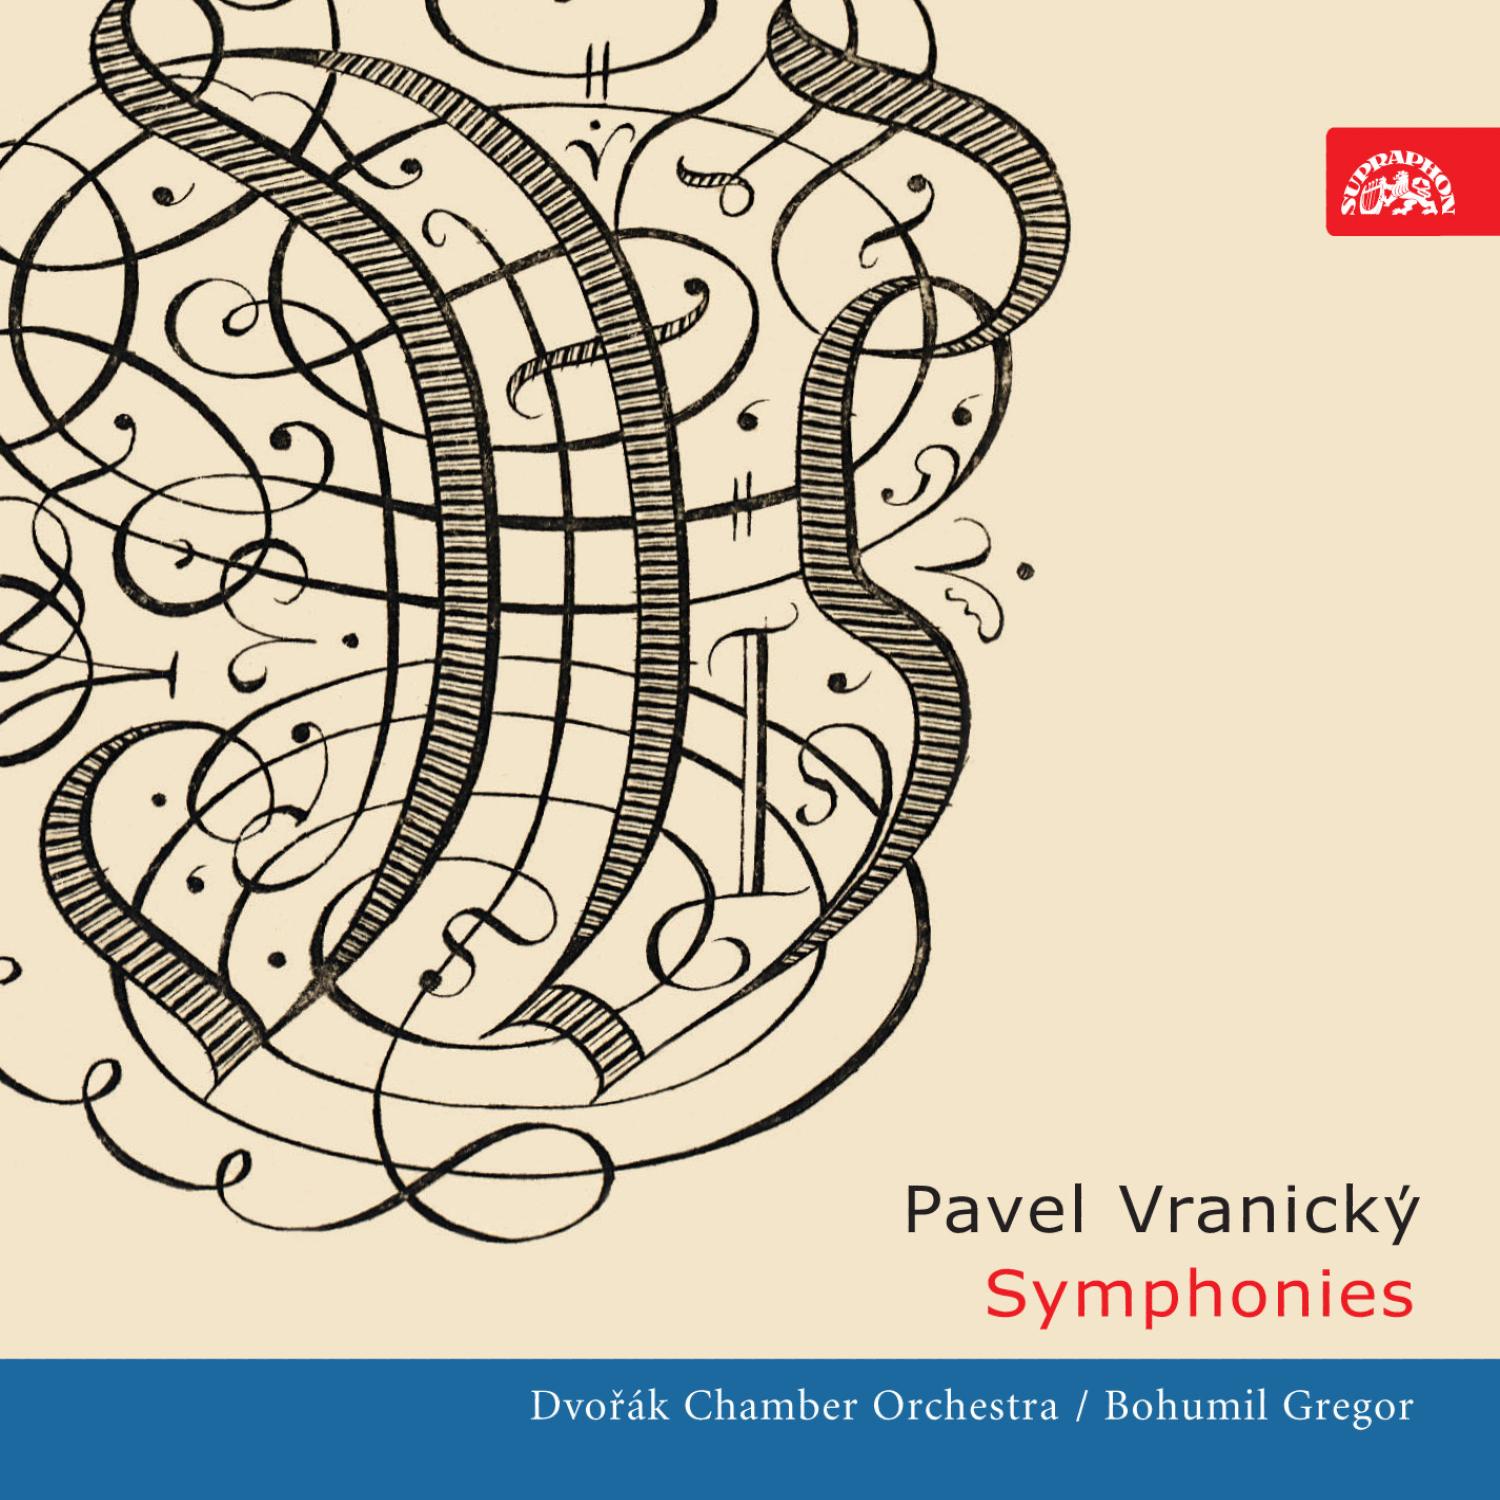 Vranicky: Symphonies in D major, in C minor, in C major